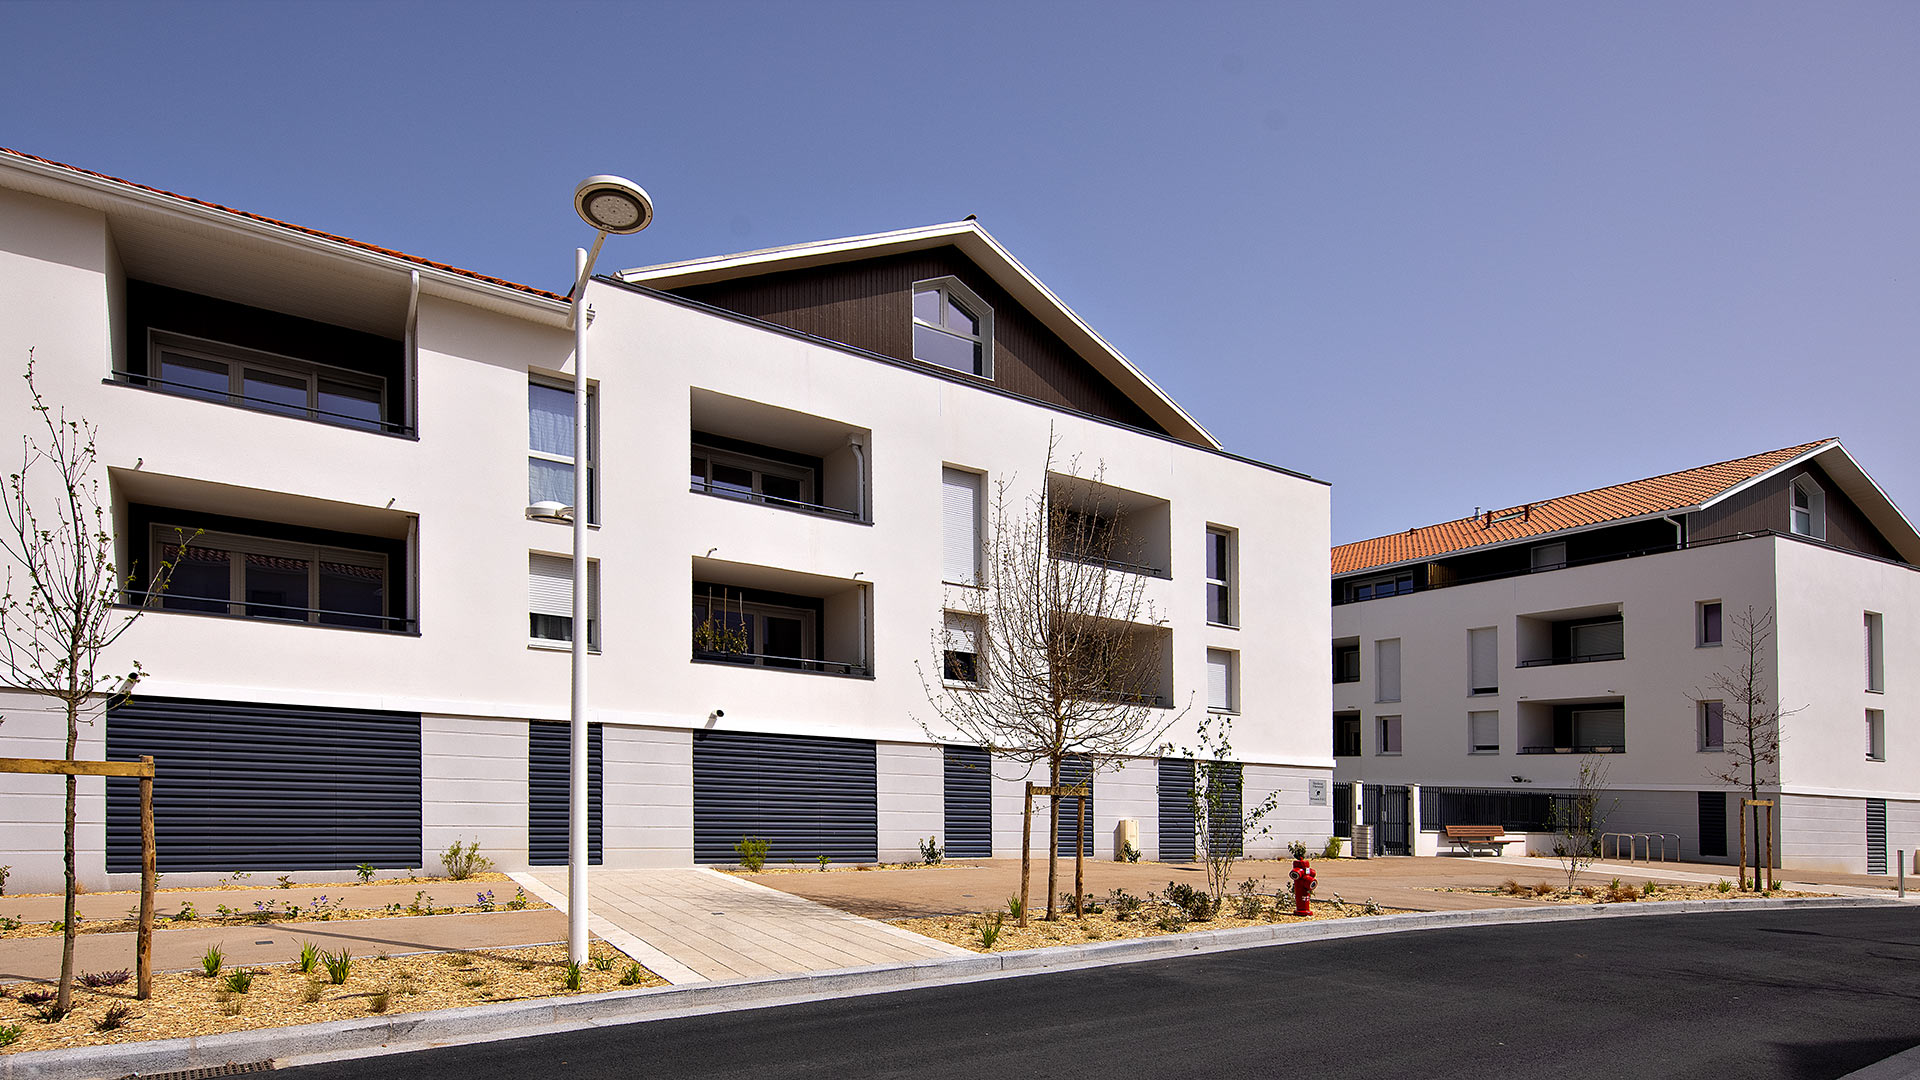 Programme immobilier neuf reprenant les codes de l'architecture landaise à Biscarrosse.